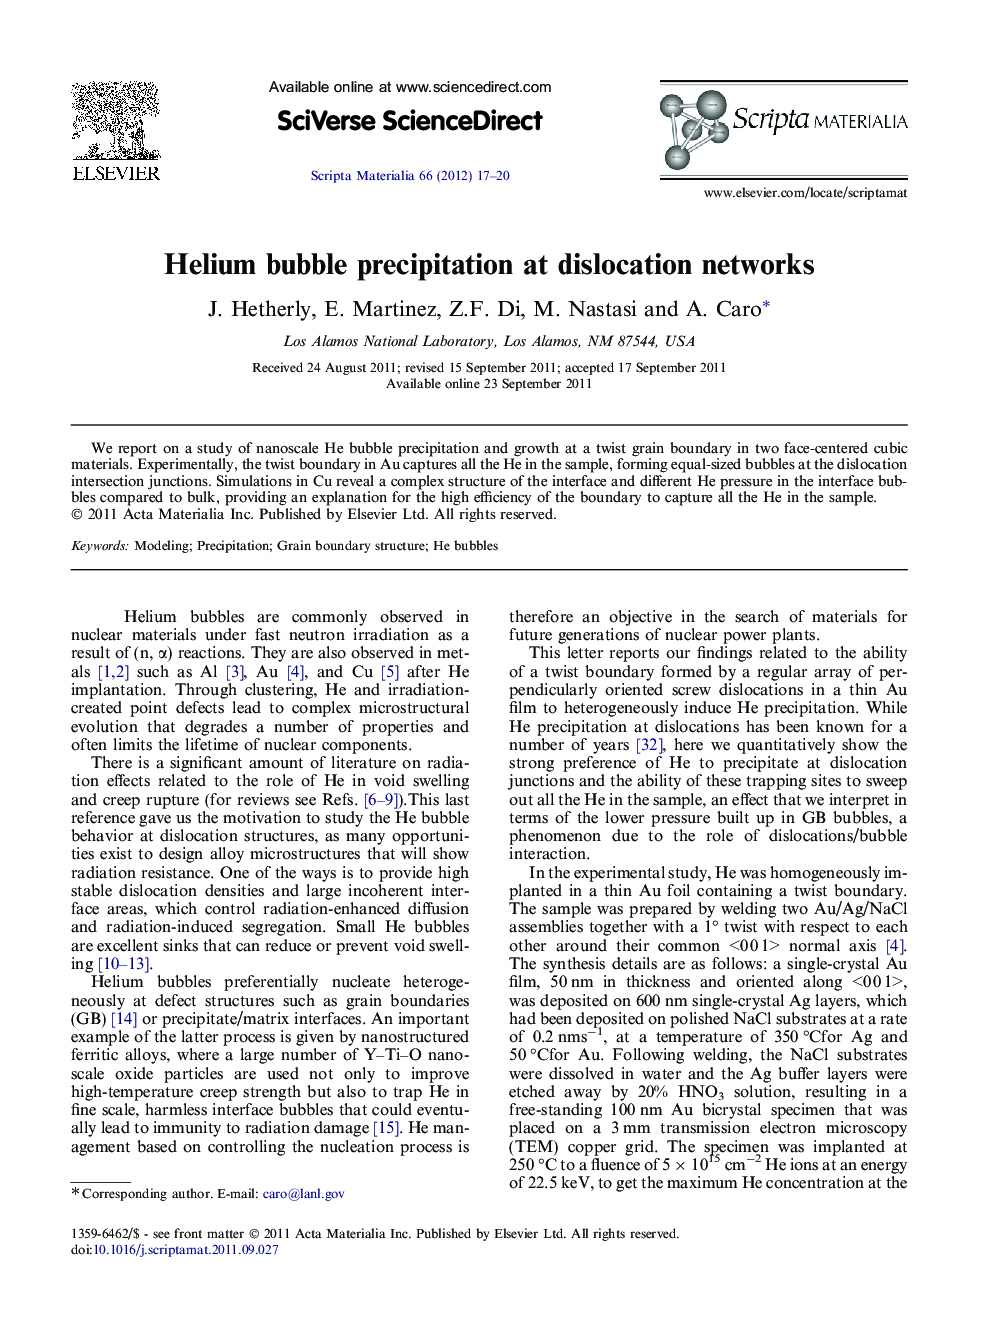 Helium bubble precipitation at dislocation networks